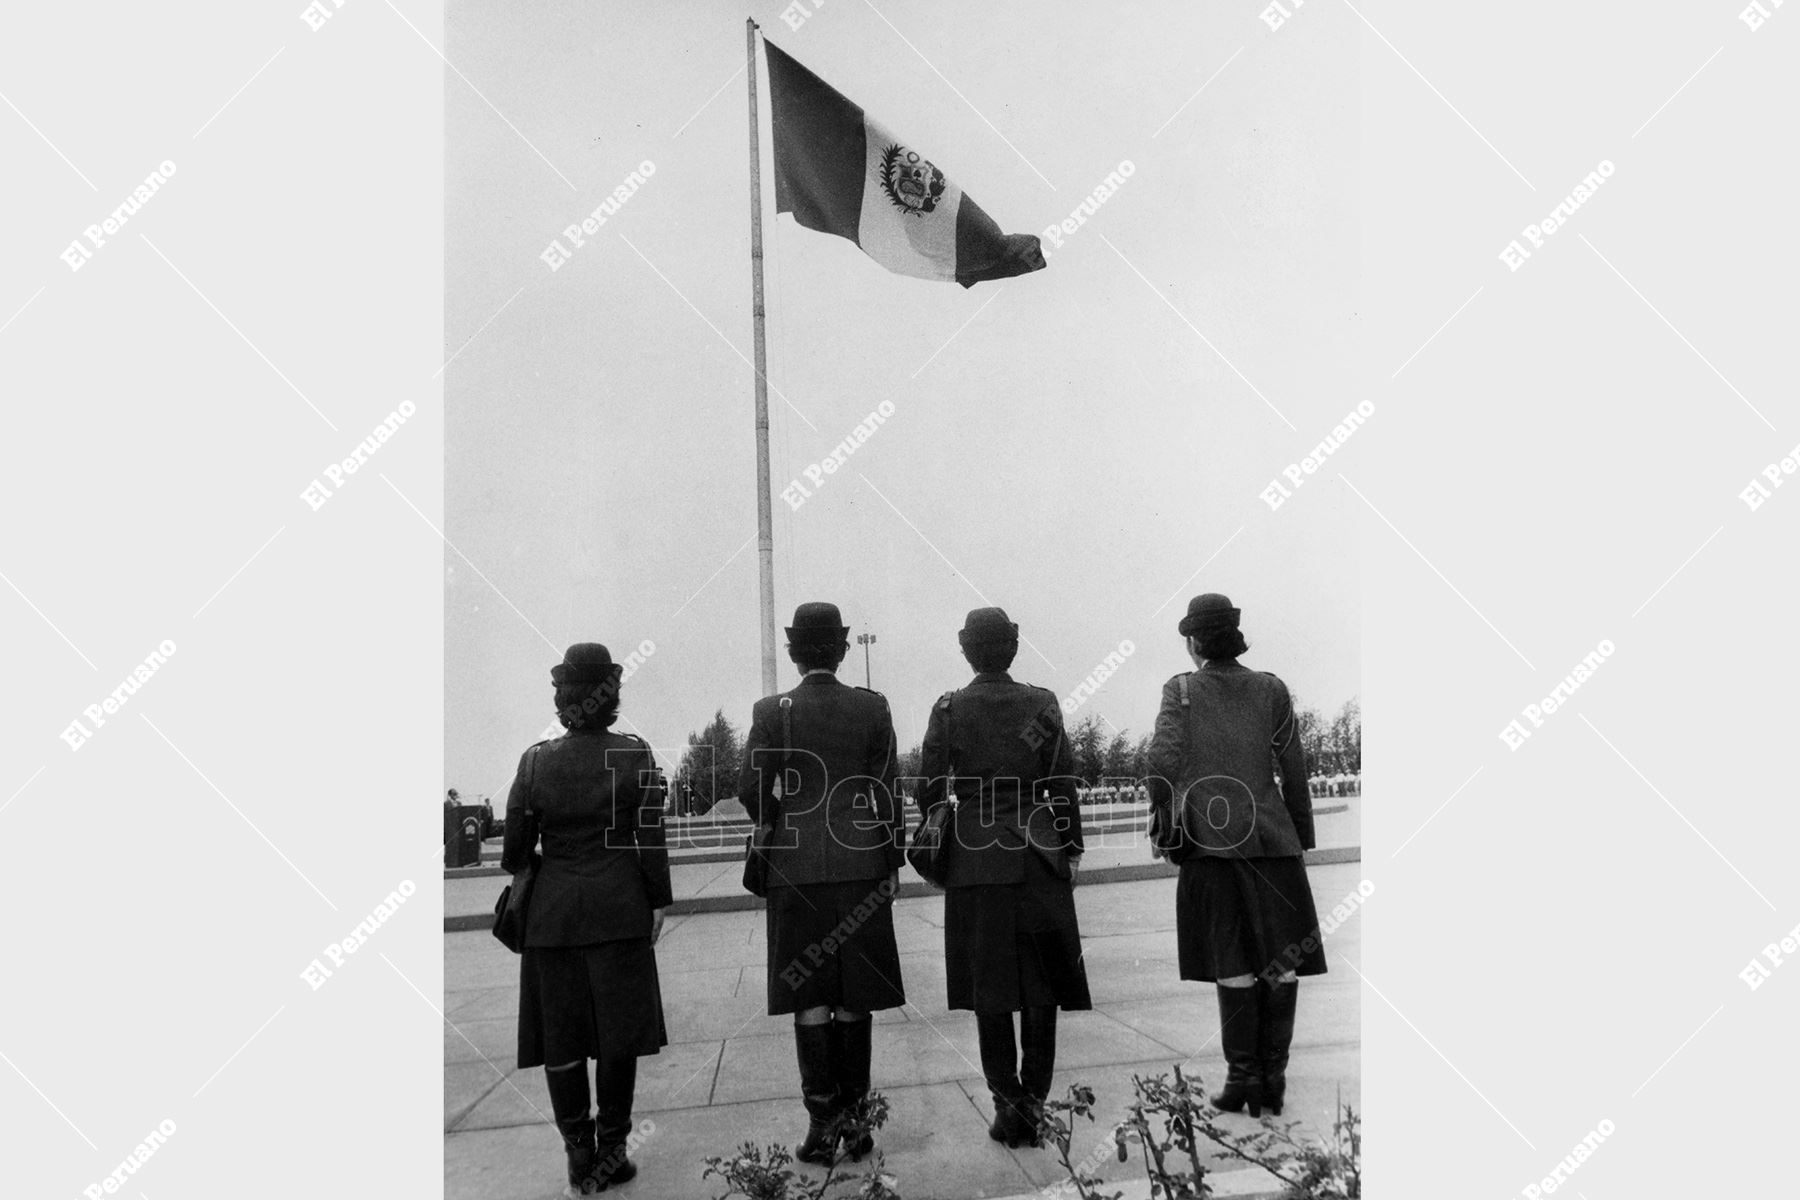 Lima - 24 noviembre 1985 / Cuatro mujeres policías rinden homenaje al pabellón nacional durante una ceremonia en la Plaza de la Bandera de Pueblo Libre. Foto: Archivo Histórico de El Peruano / Virgilio Molero